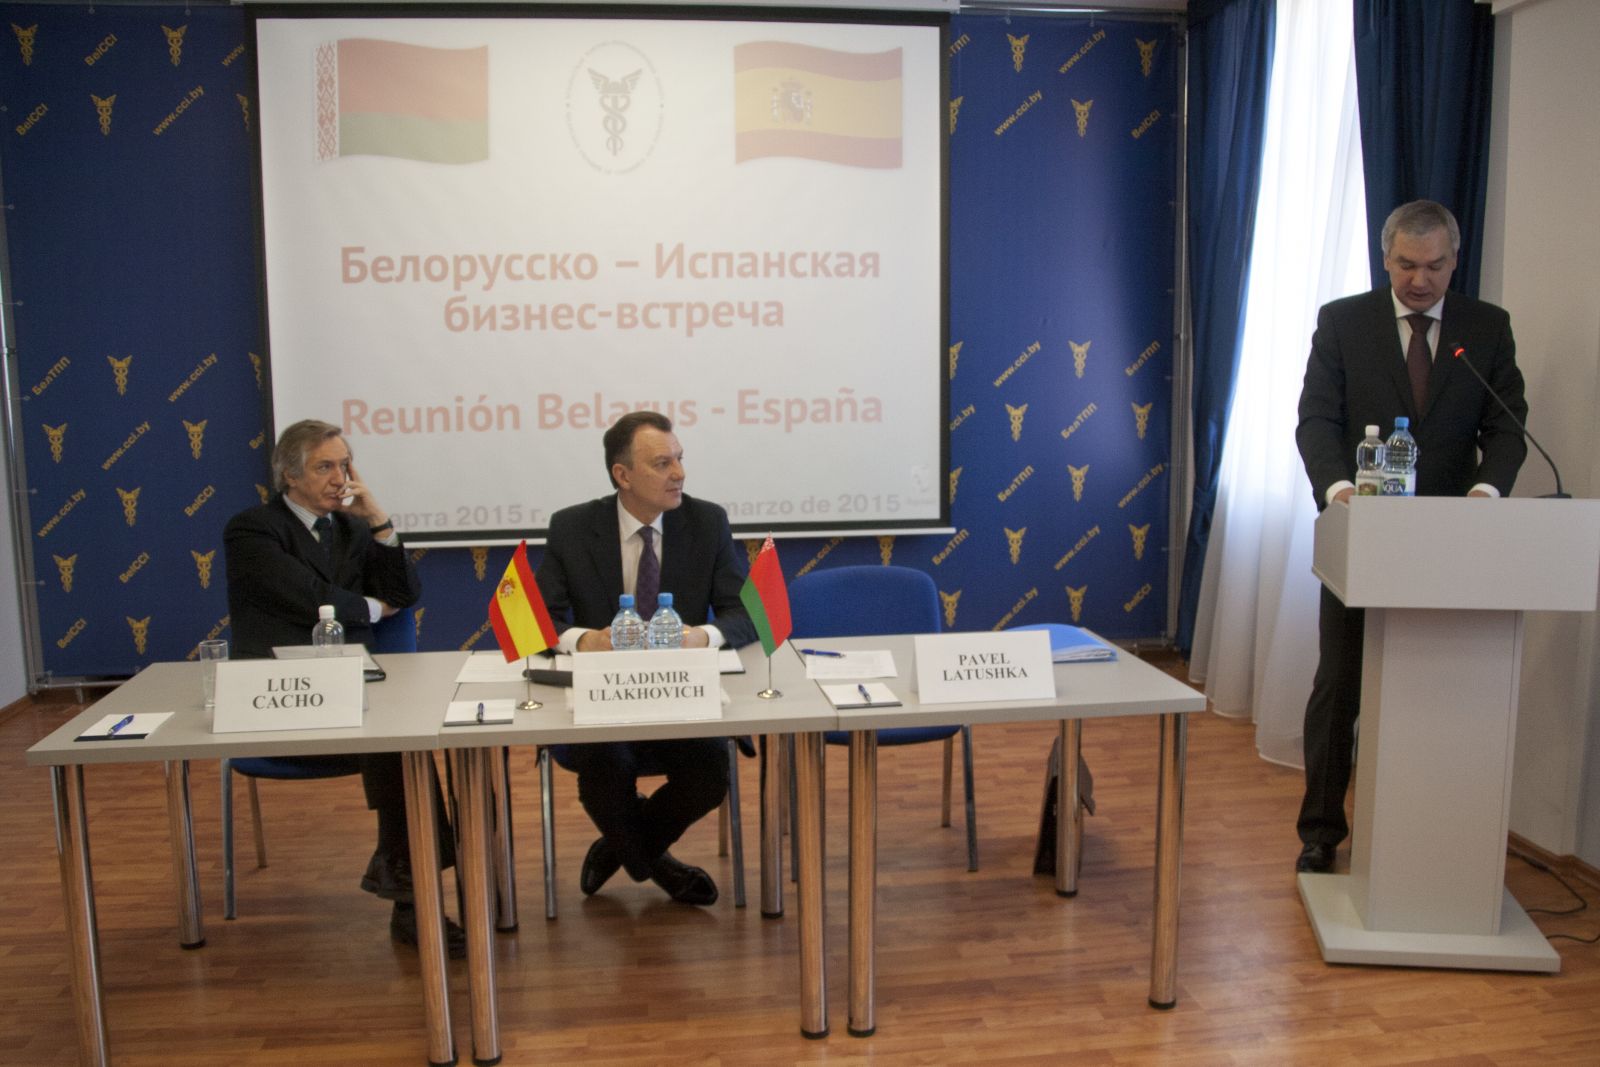 Белорусско-Испанская бизнес-встреча